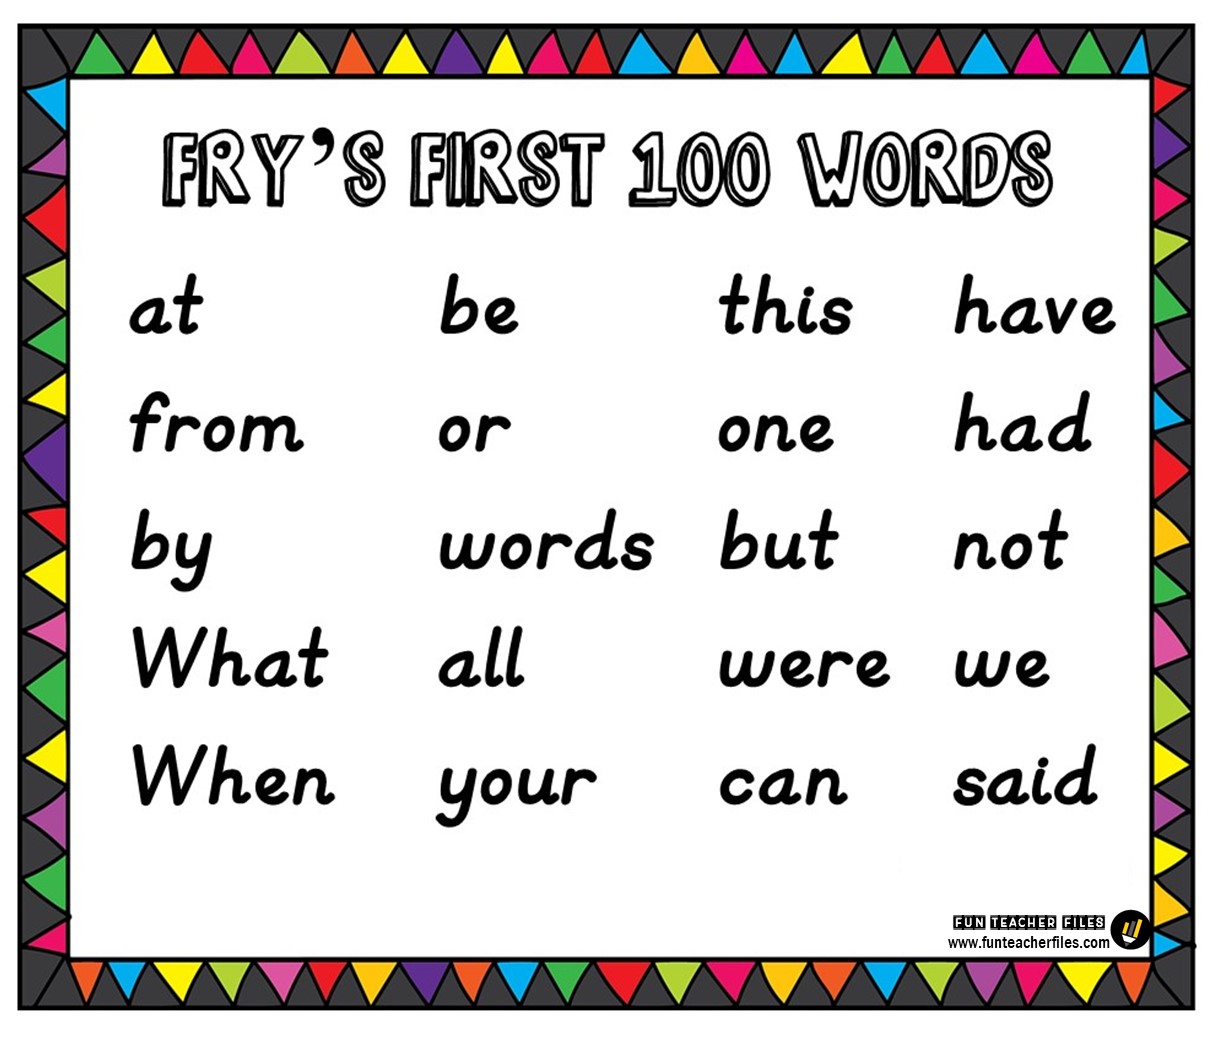 fry-s-second-100-sight-words-fun-teacher-files